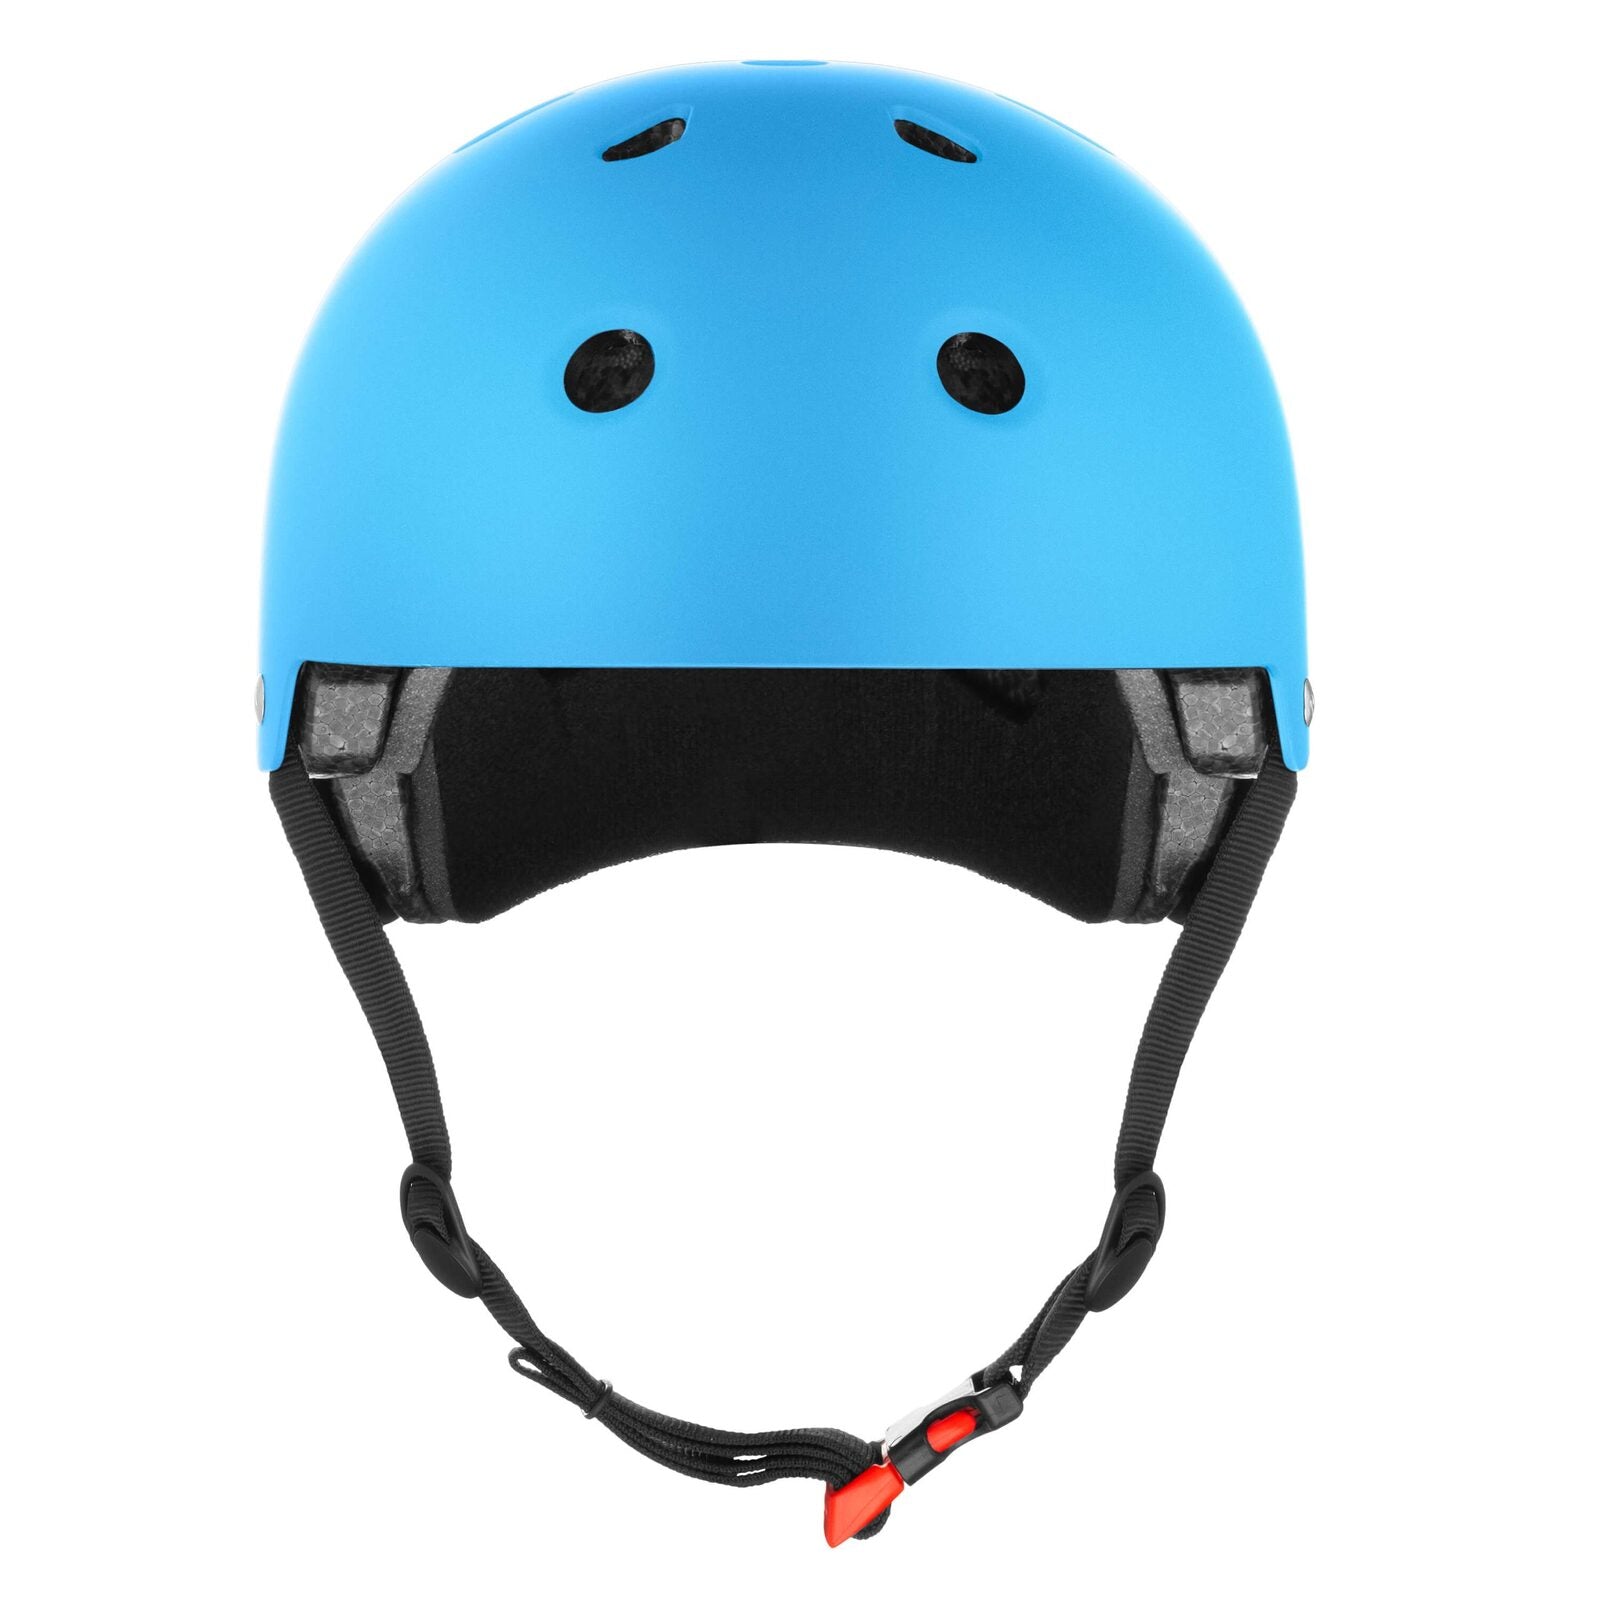 Core Action Sports Helmet Cobalt Blue [sz:xs/sm]